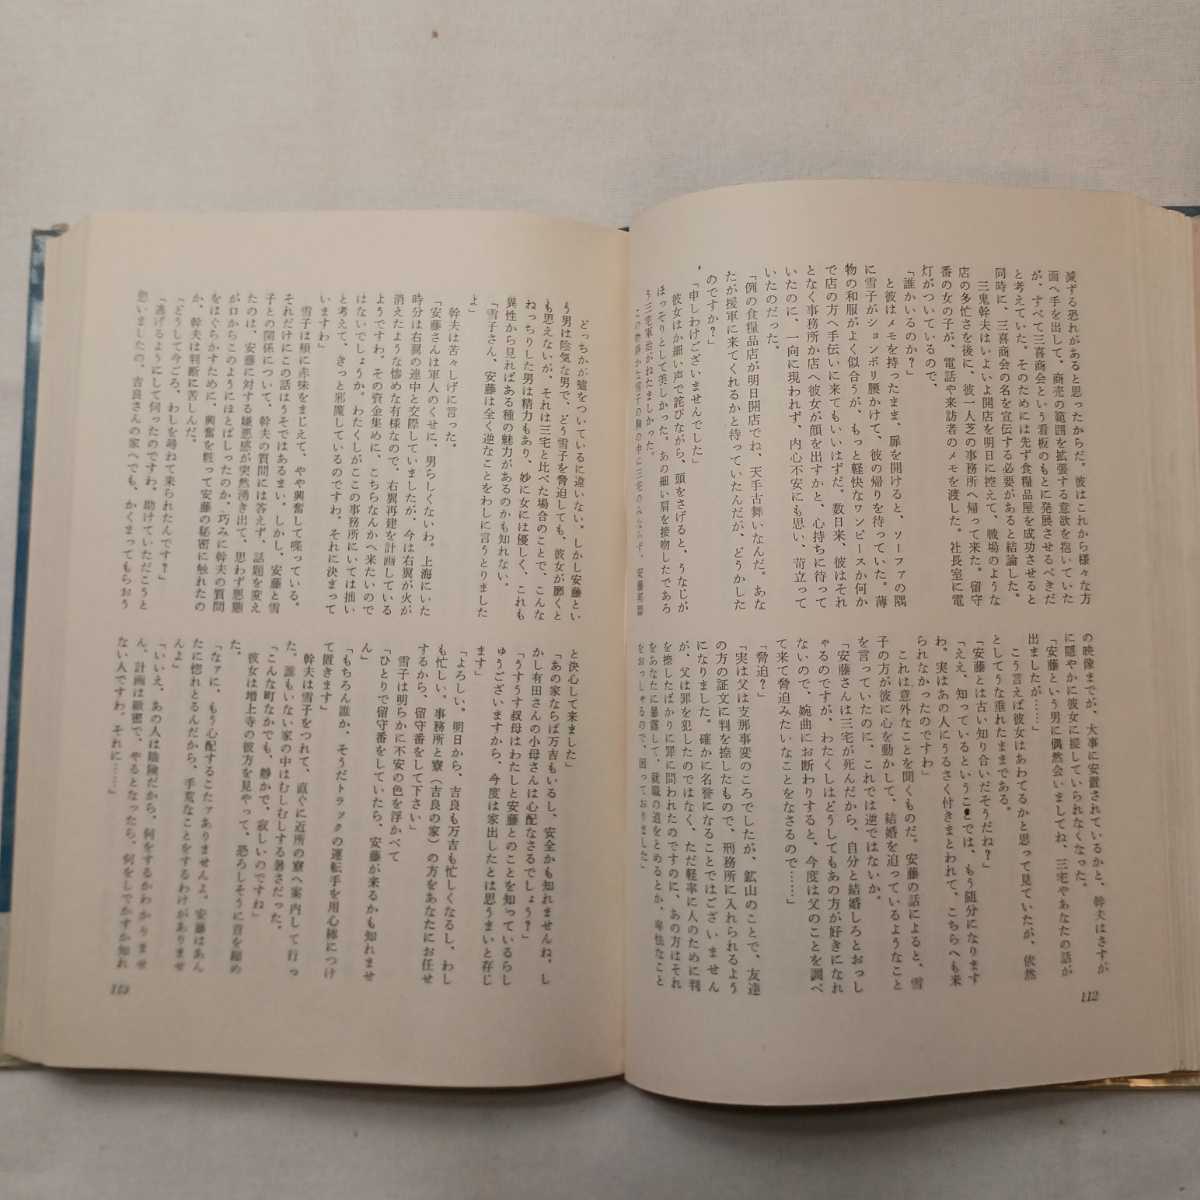 zaa-393♪まだまだ夜だ 今日出海 (著) 出版社 新潮社 (1962/12/20) 